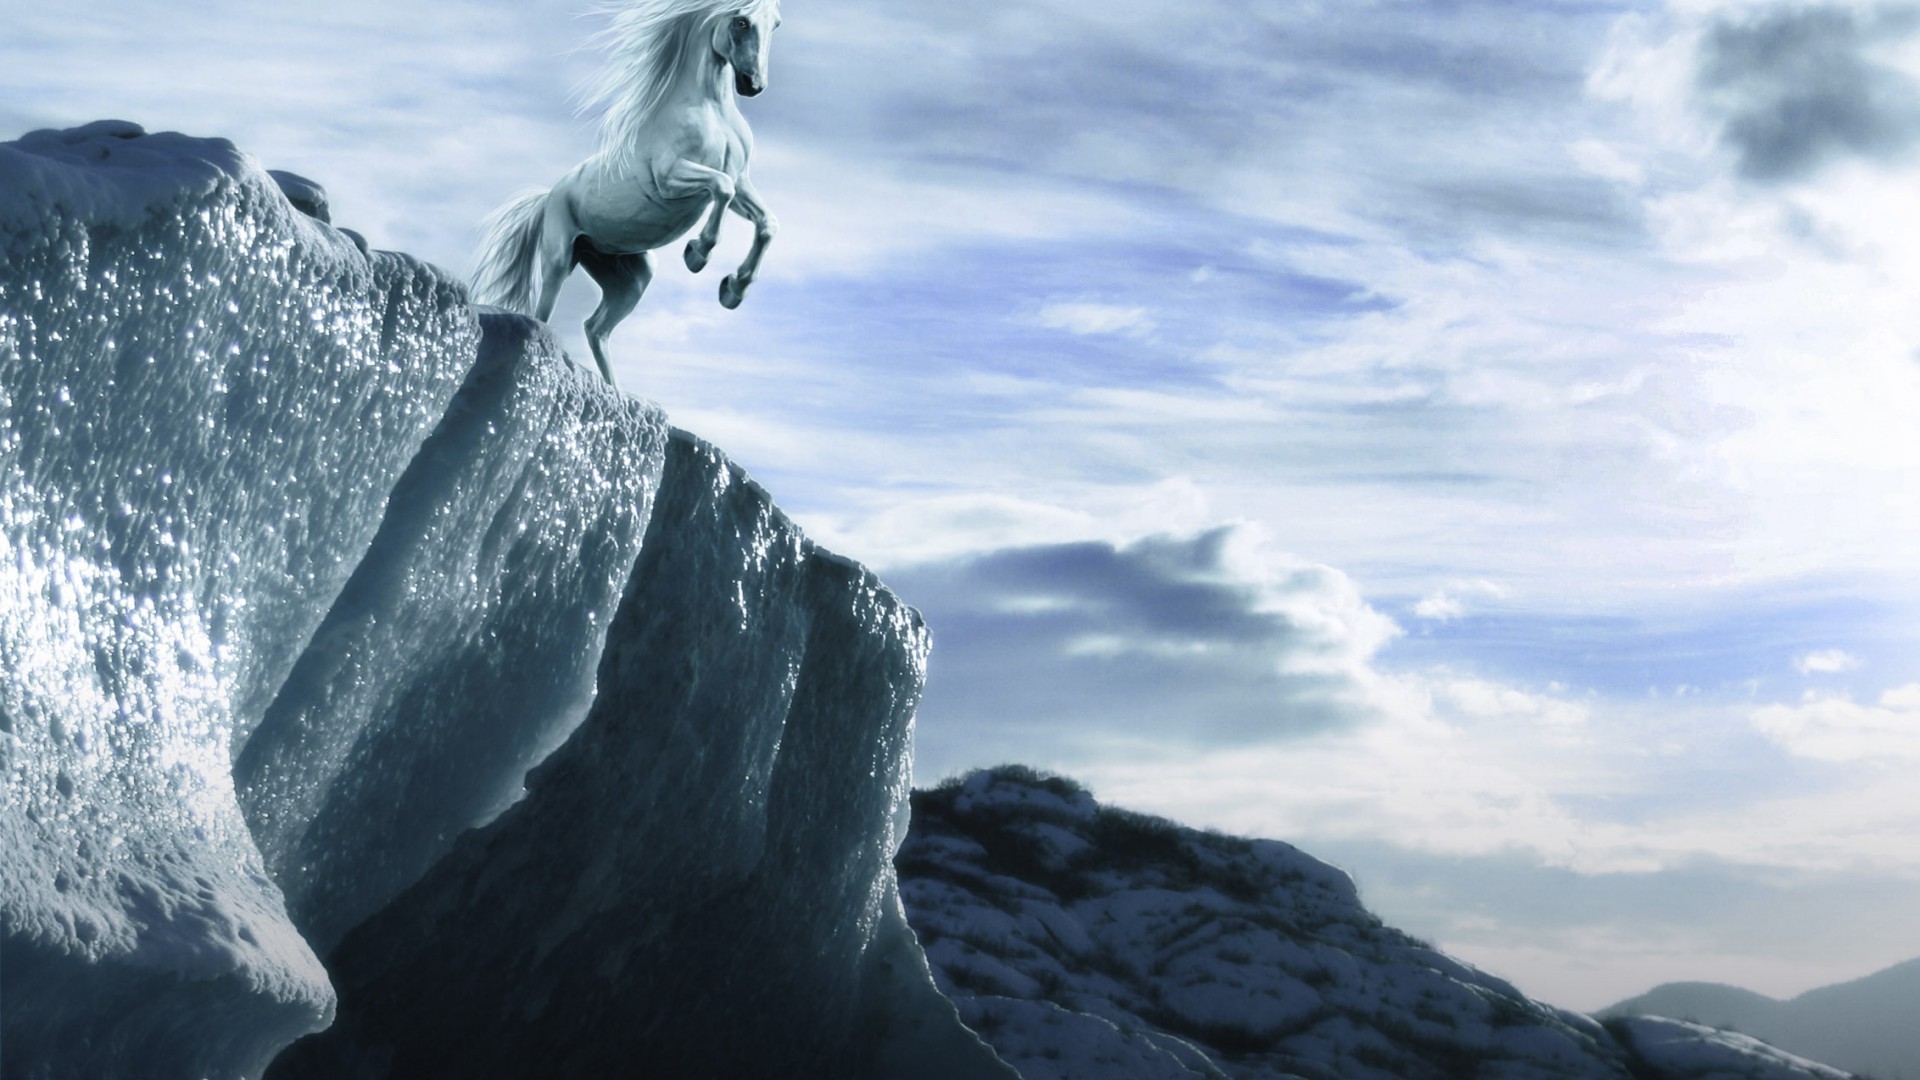 лошади снег один на открытом воздухе горы небо путешествия зима лед лезут рок альпинист приключения пейзаж дневной свет воды природа походу действие